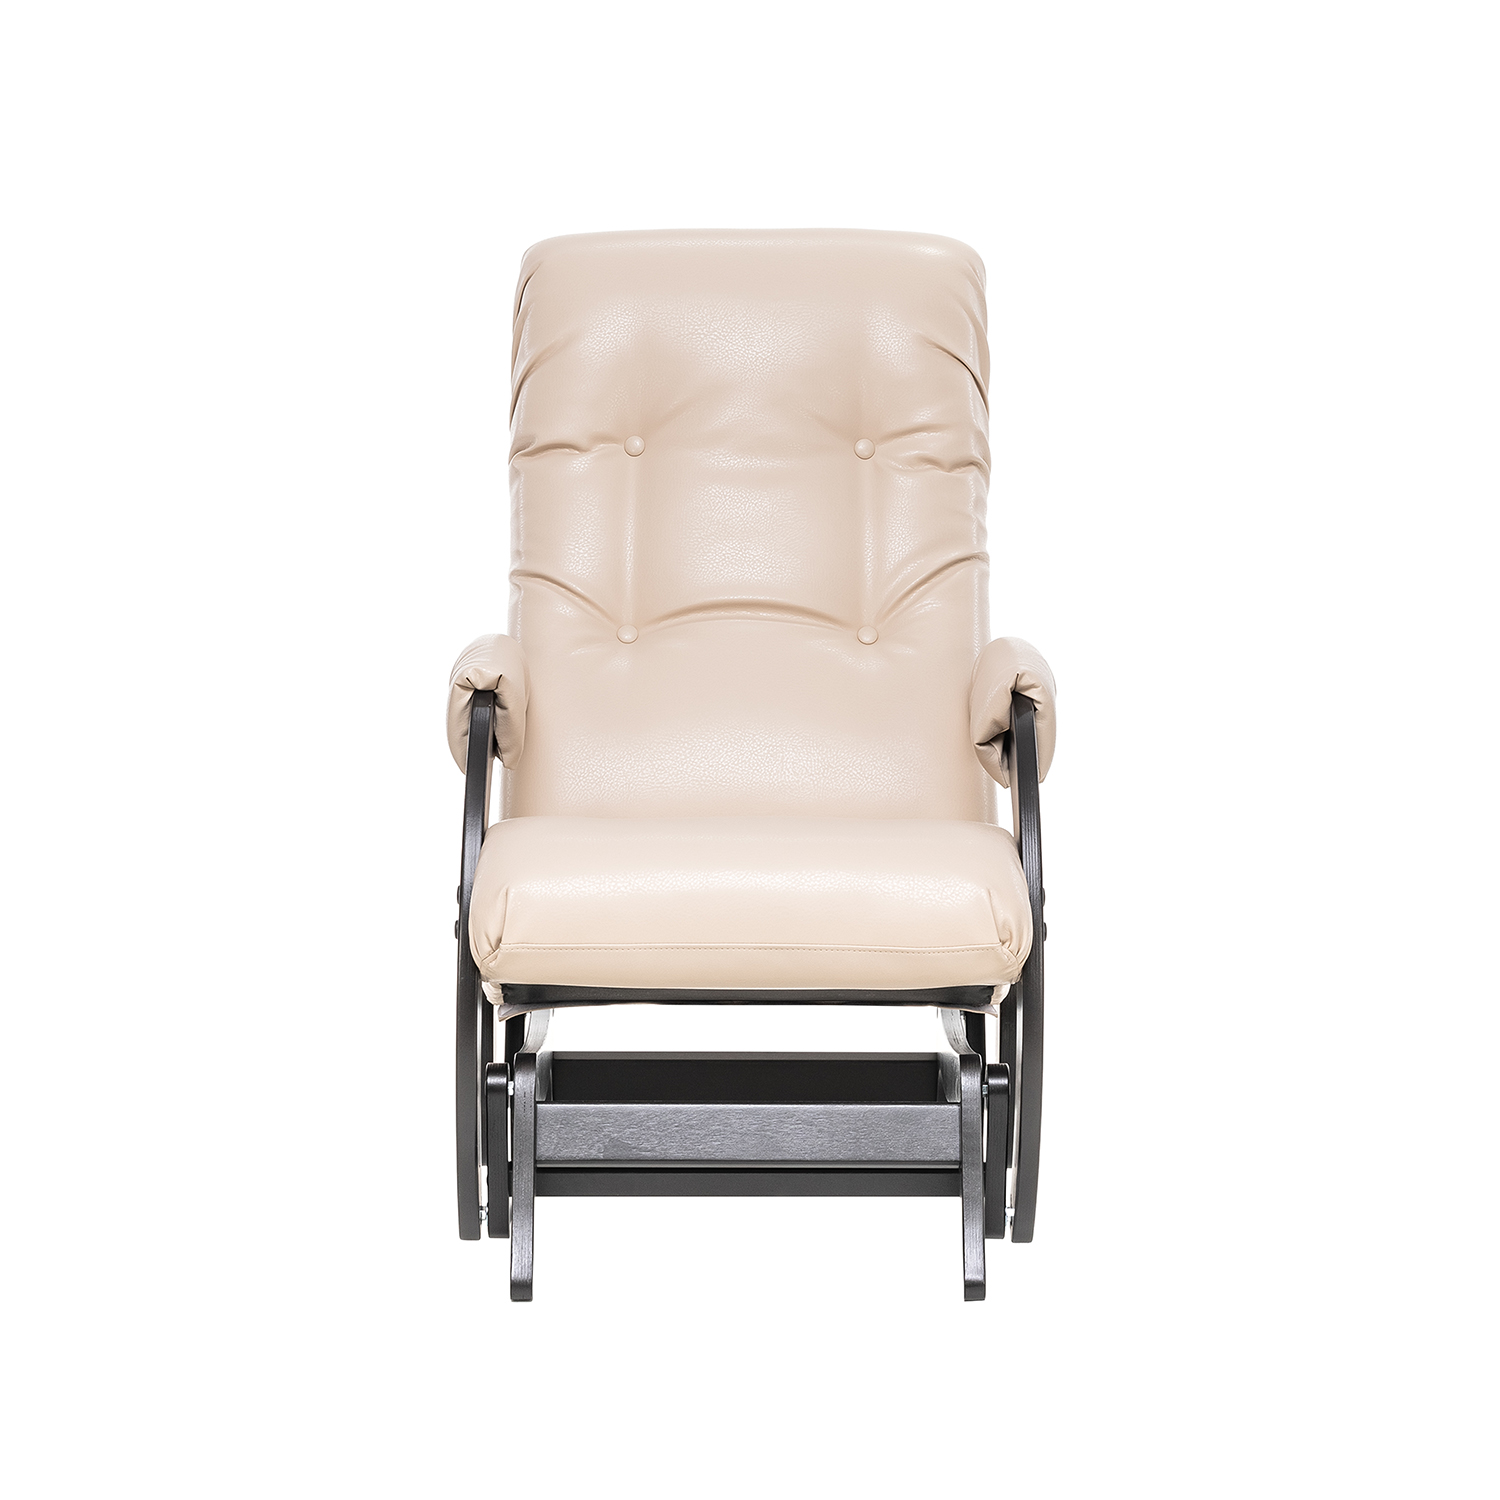 Кресло-глайдер Модель 68, венге, к/з Polaris Beige